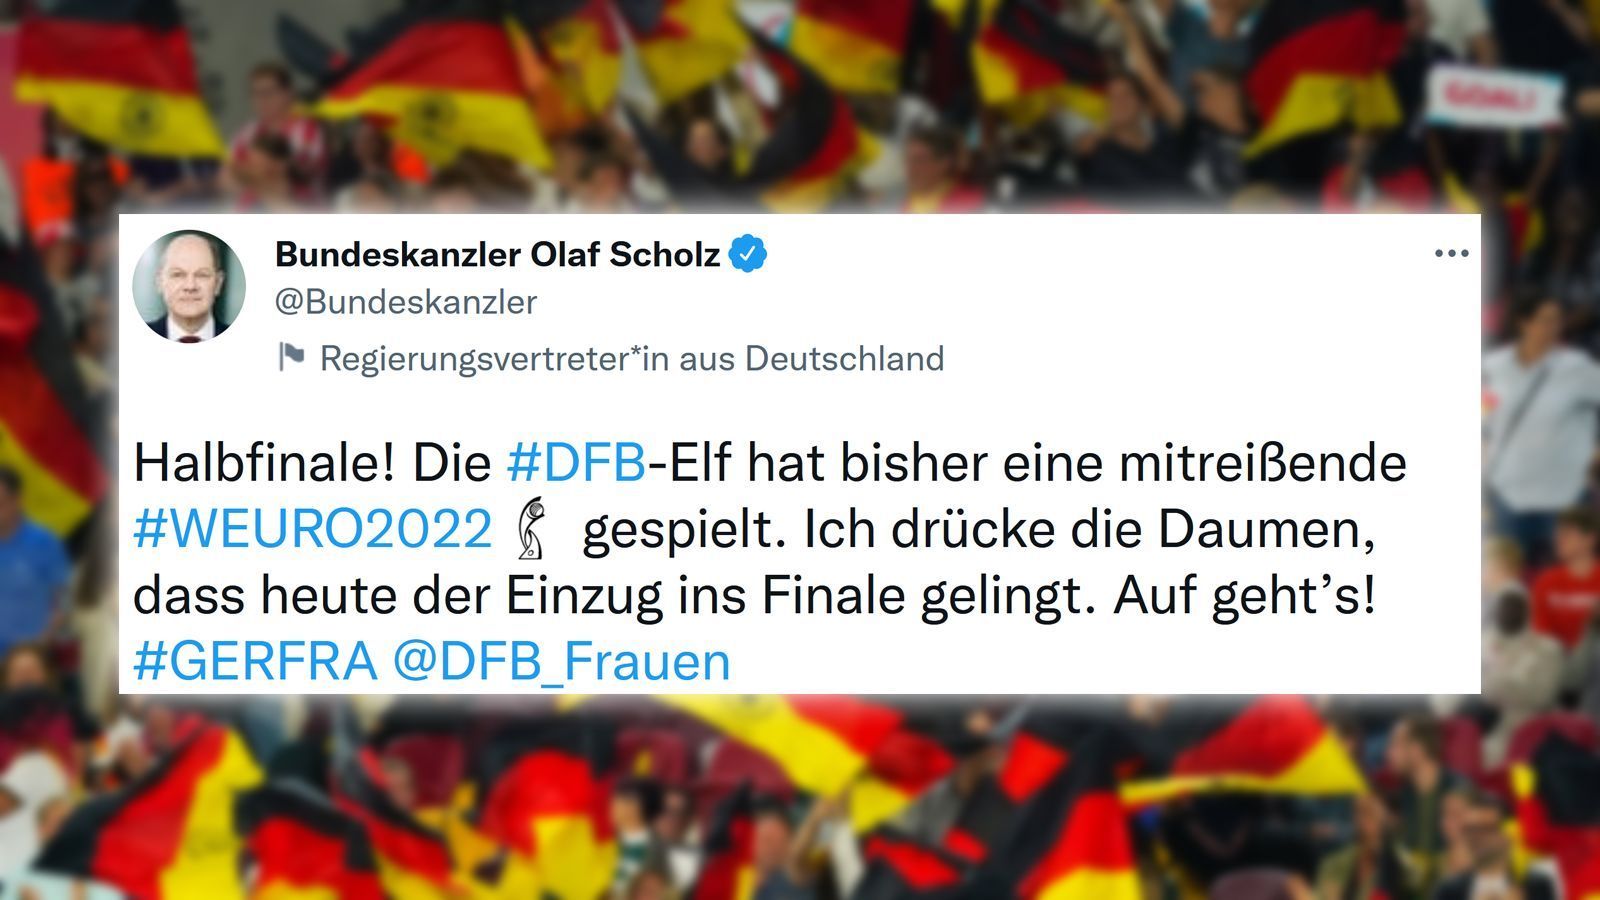 
                <strong>Bundeskanzler drückt DFB-Frauen die Daumen</strong><br>
                Im Vorfeld der Partie drückte Bundeskanzler Olaf Scholz der DFB-Elf auf Twitter die Daumen.
              